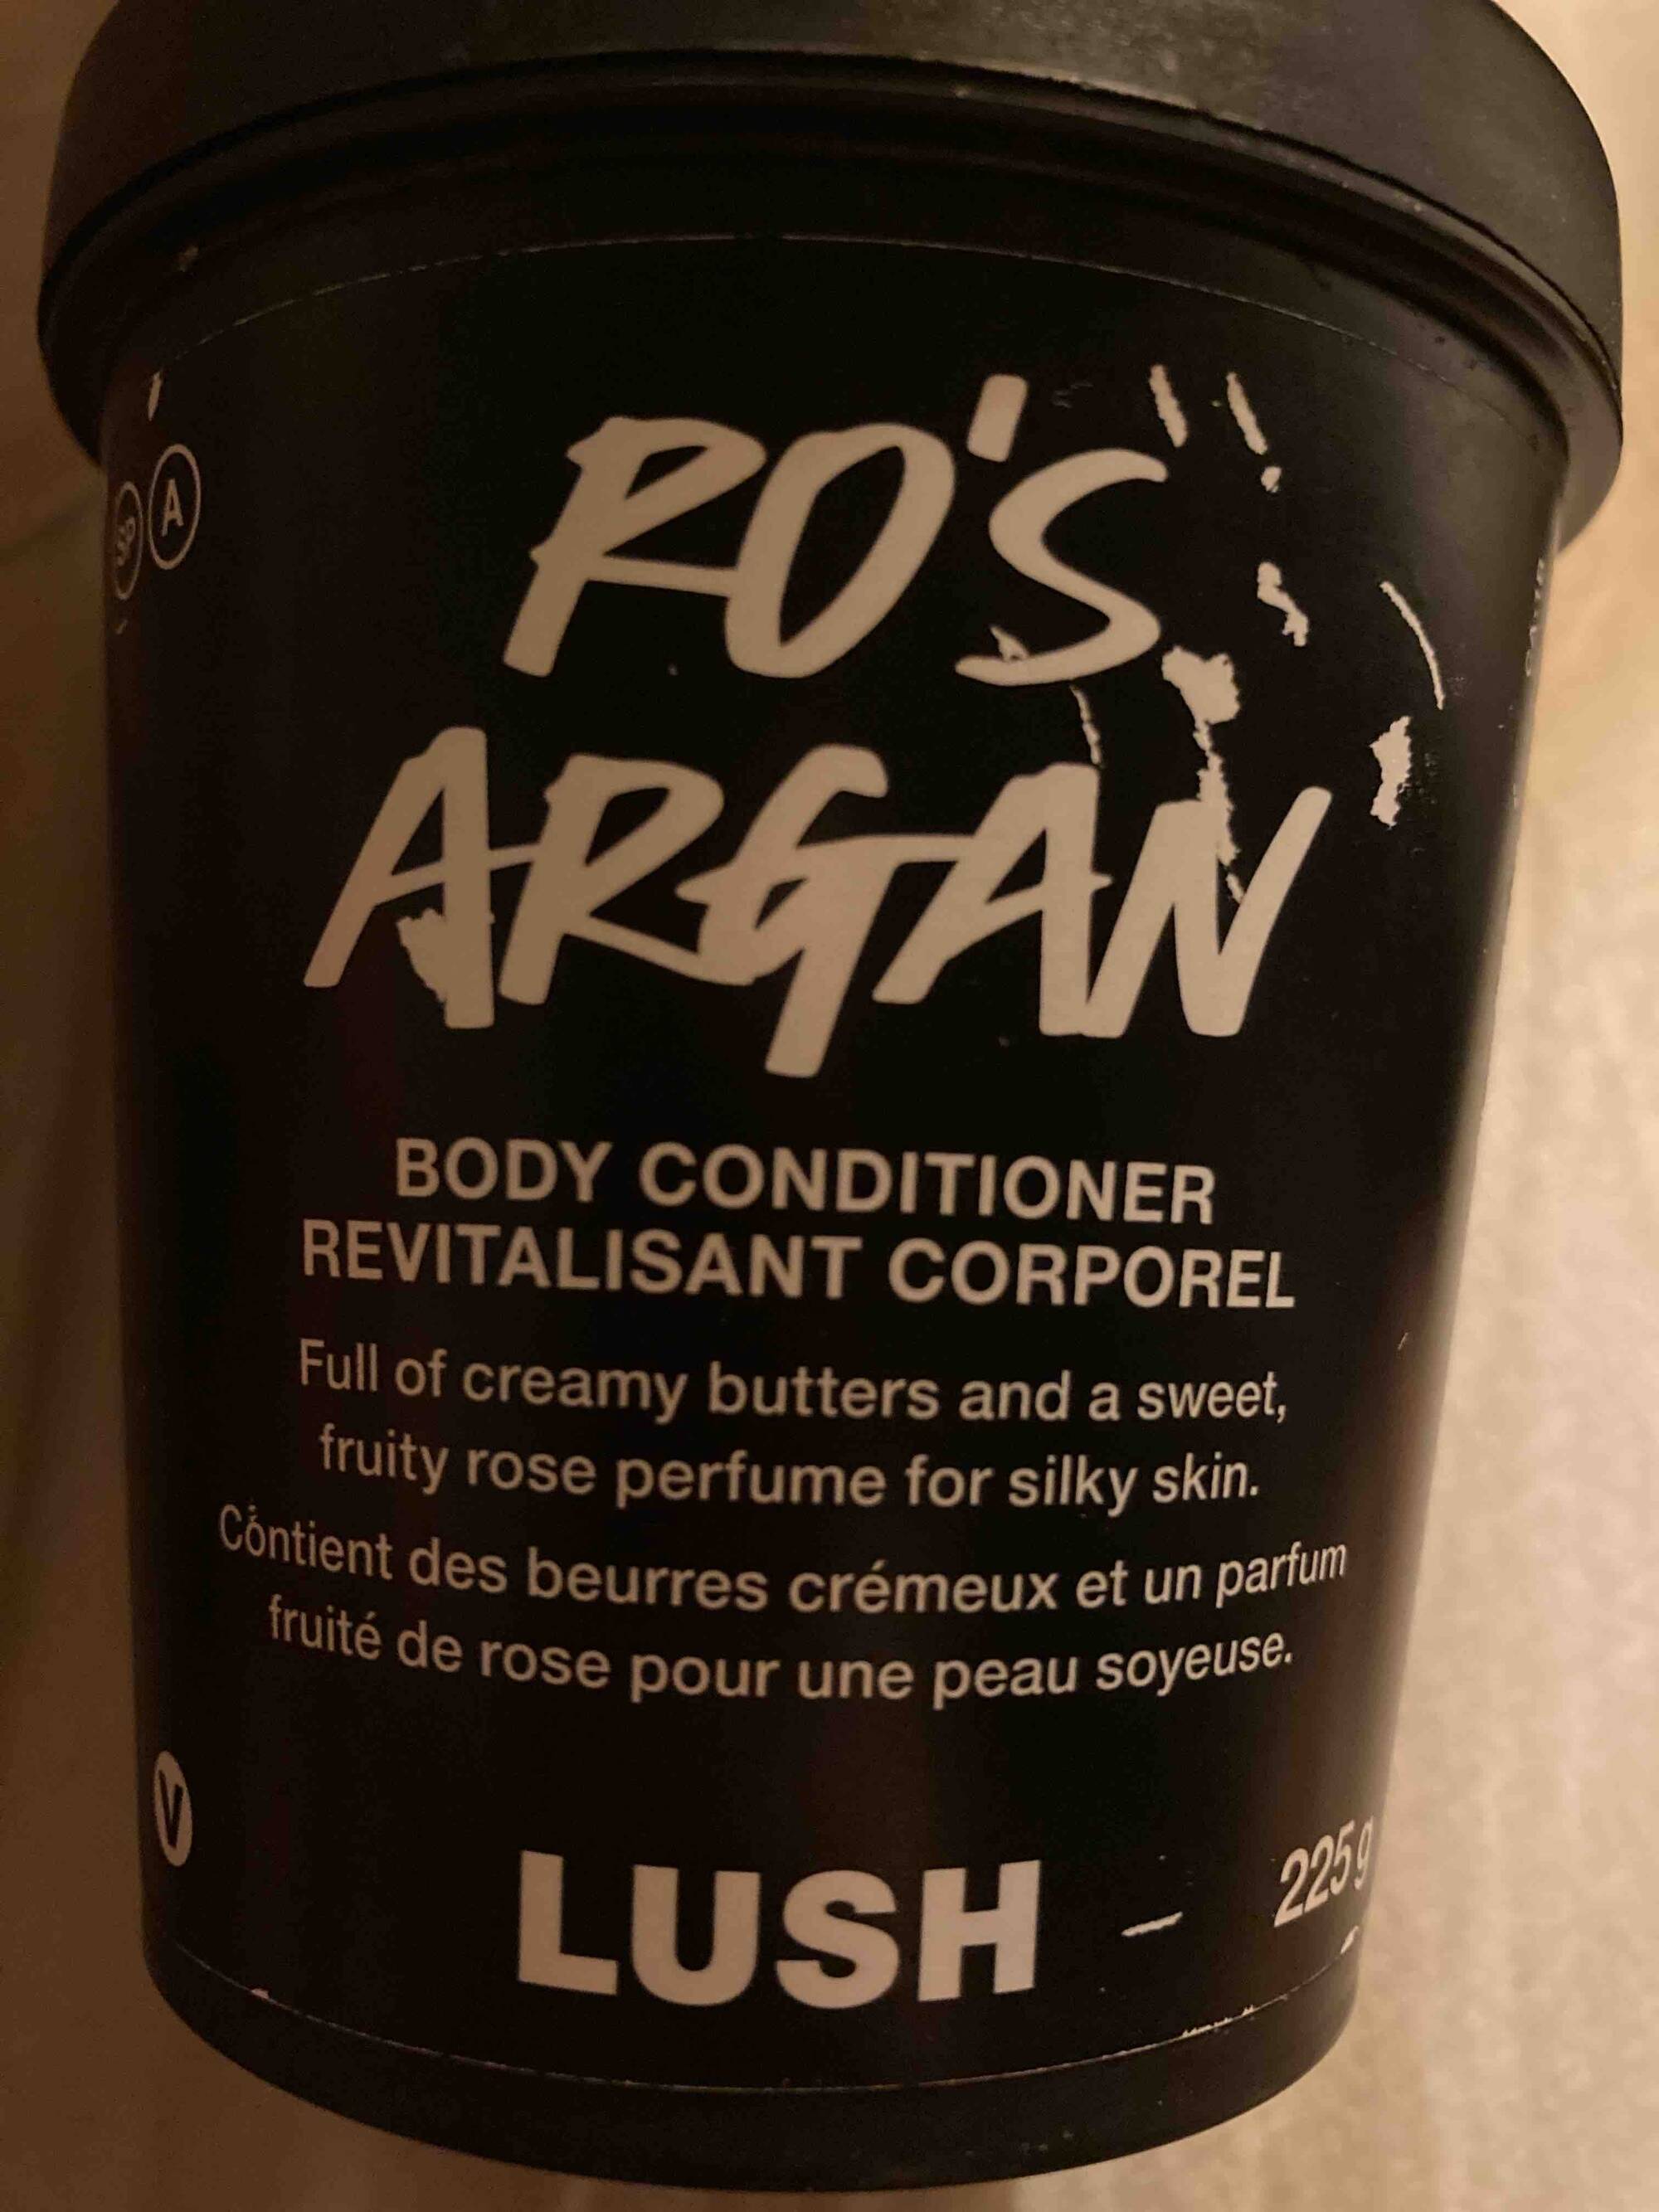 LUSH - Ro's Argan - revitalisant corporel